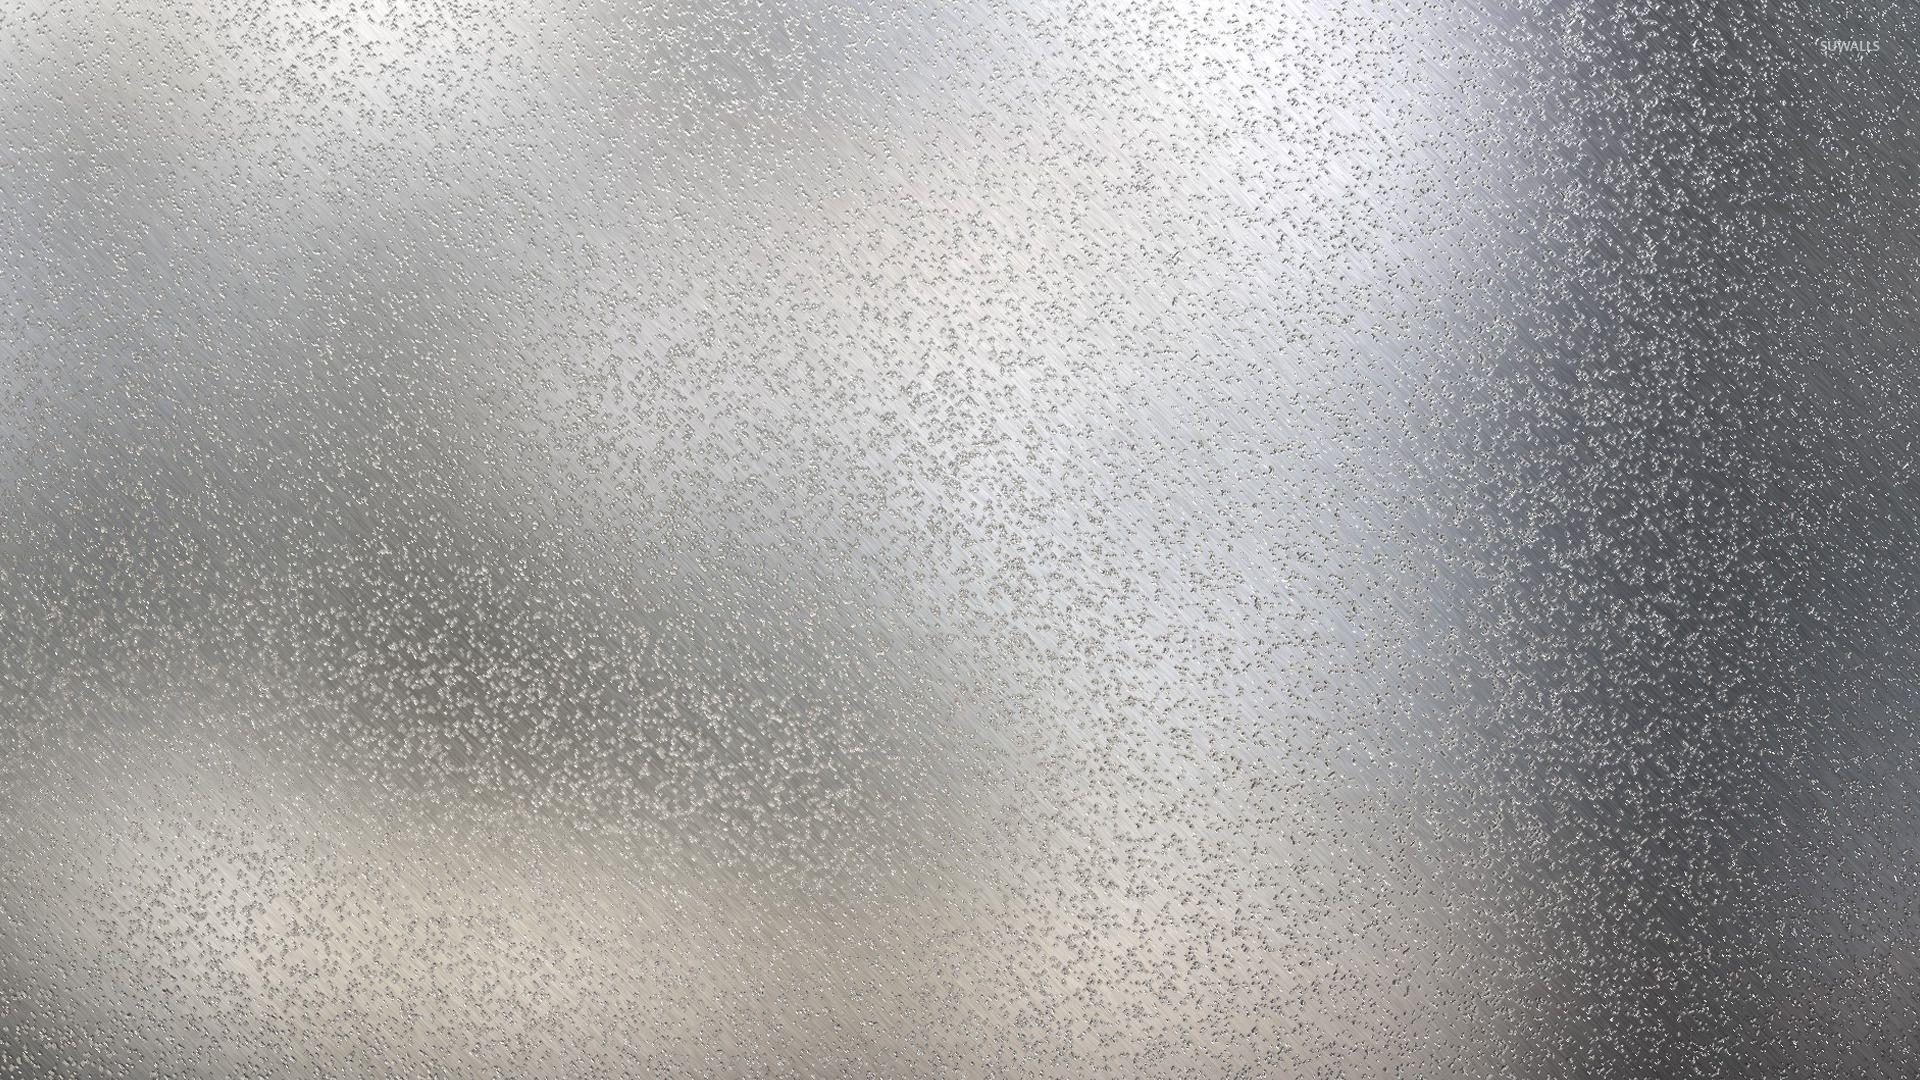 Wet glass wallpaper wallpaper